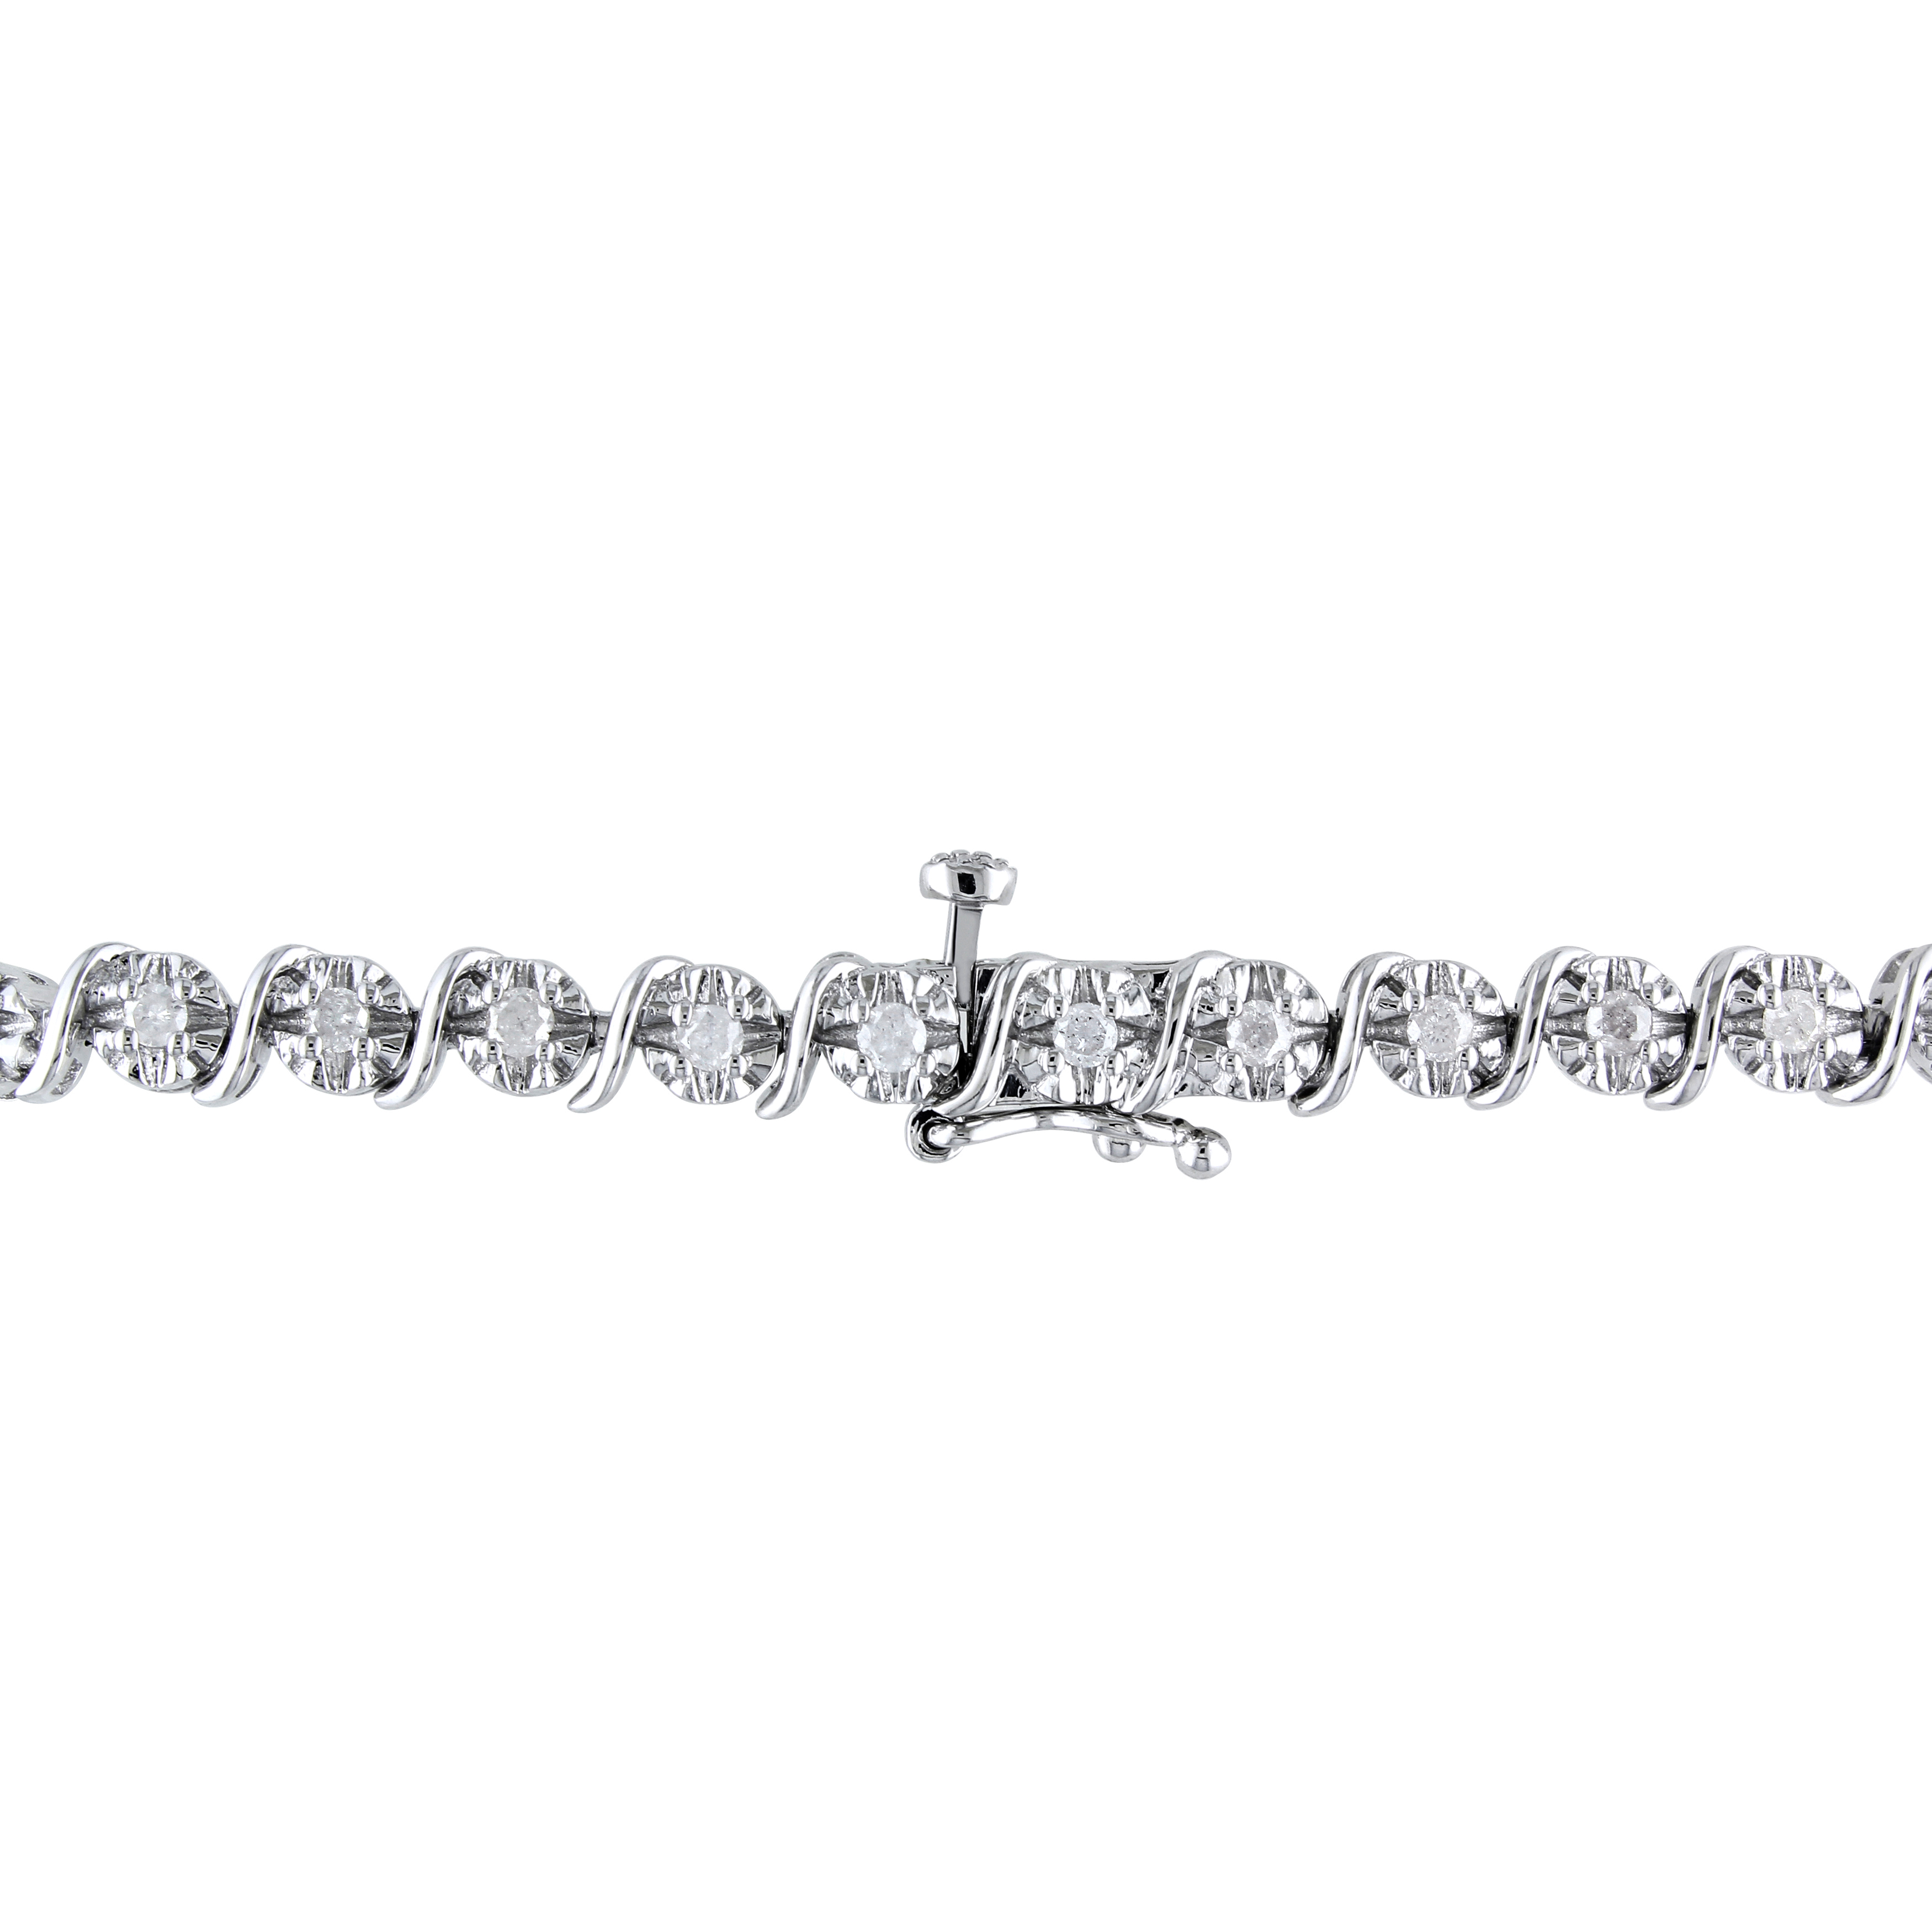 1 CT TW Diamond S-Shape Bracelet in Sterling Silver - 7.25 in.